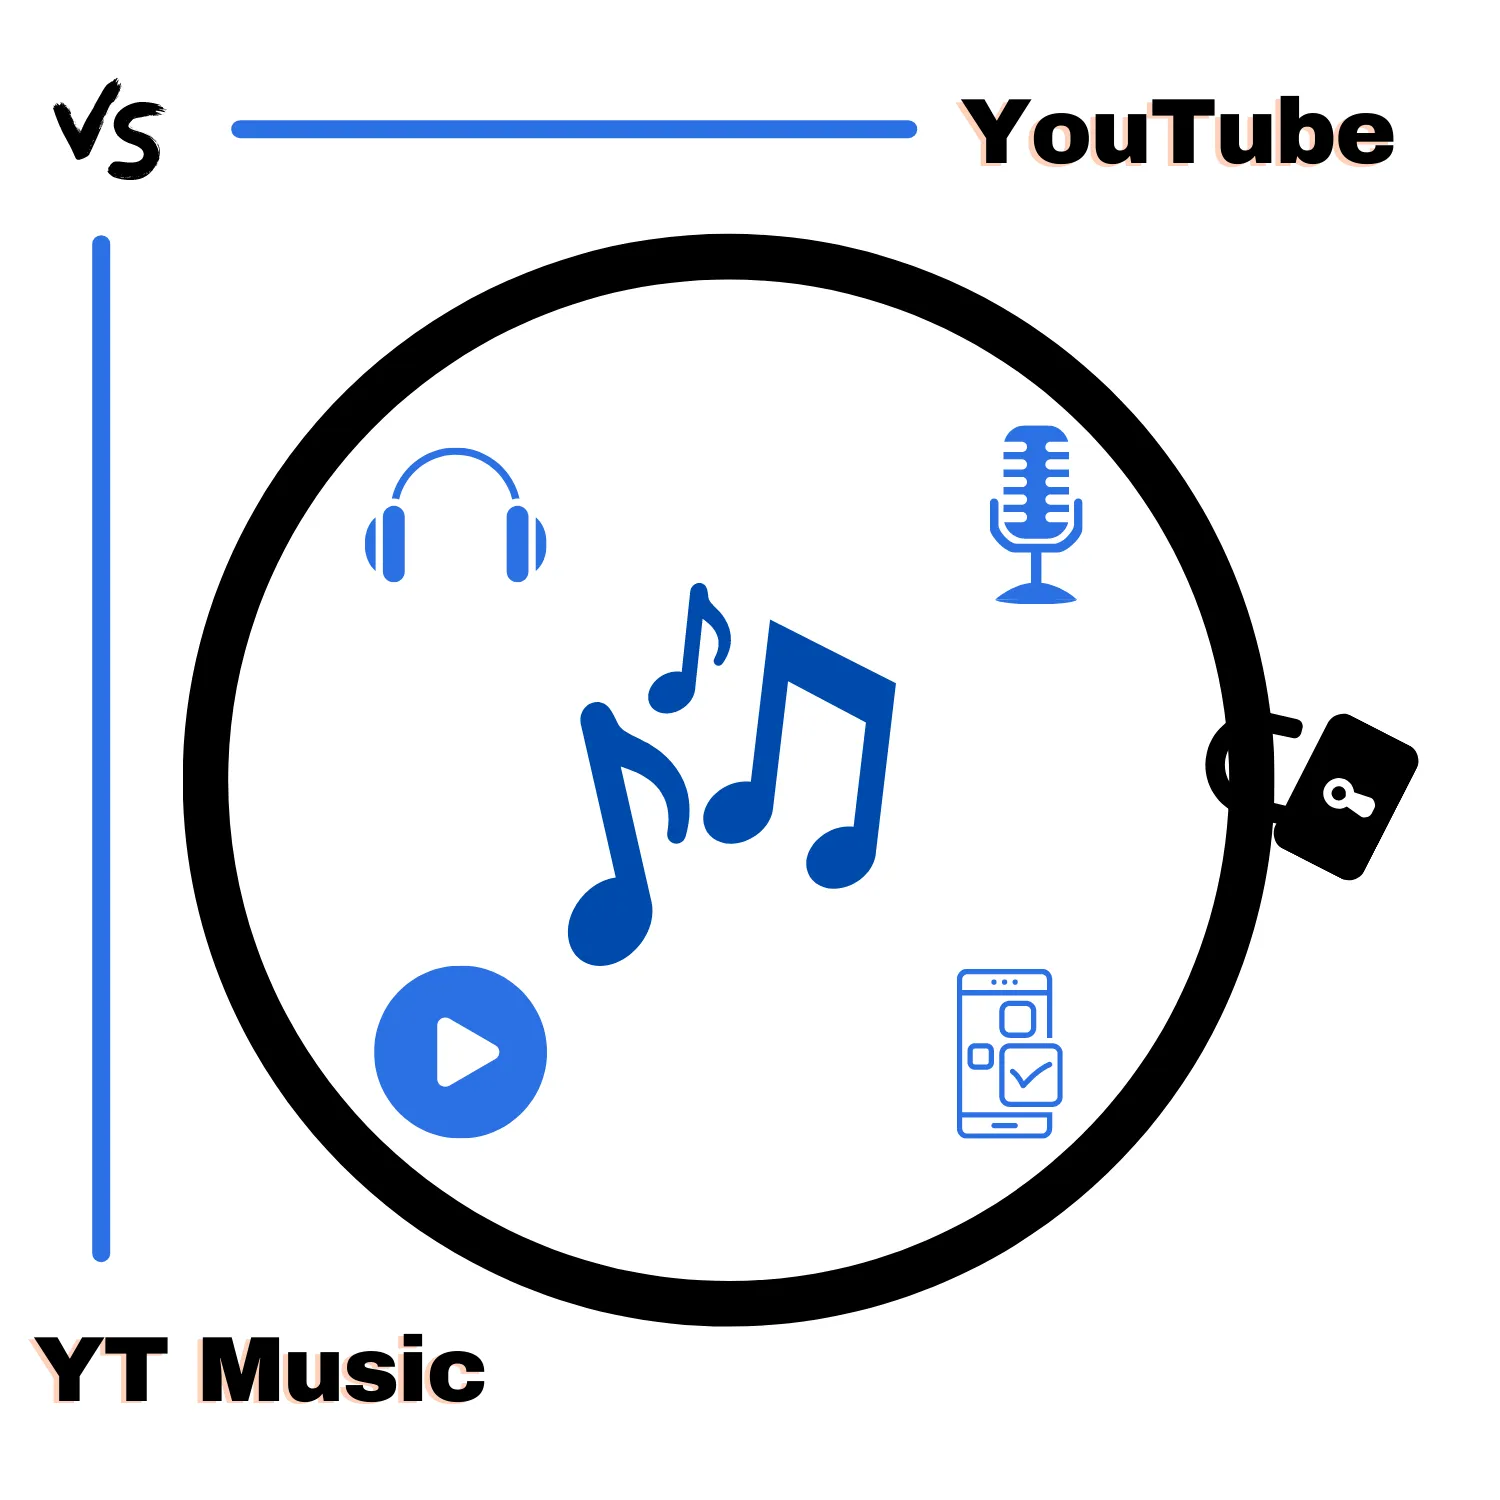 YouTube vs. YouTube Music